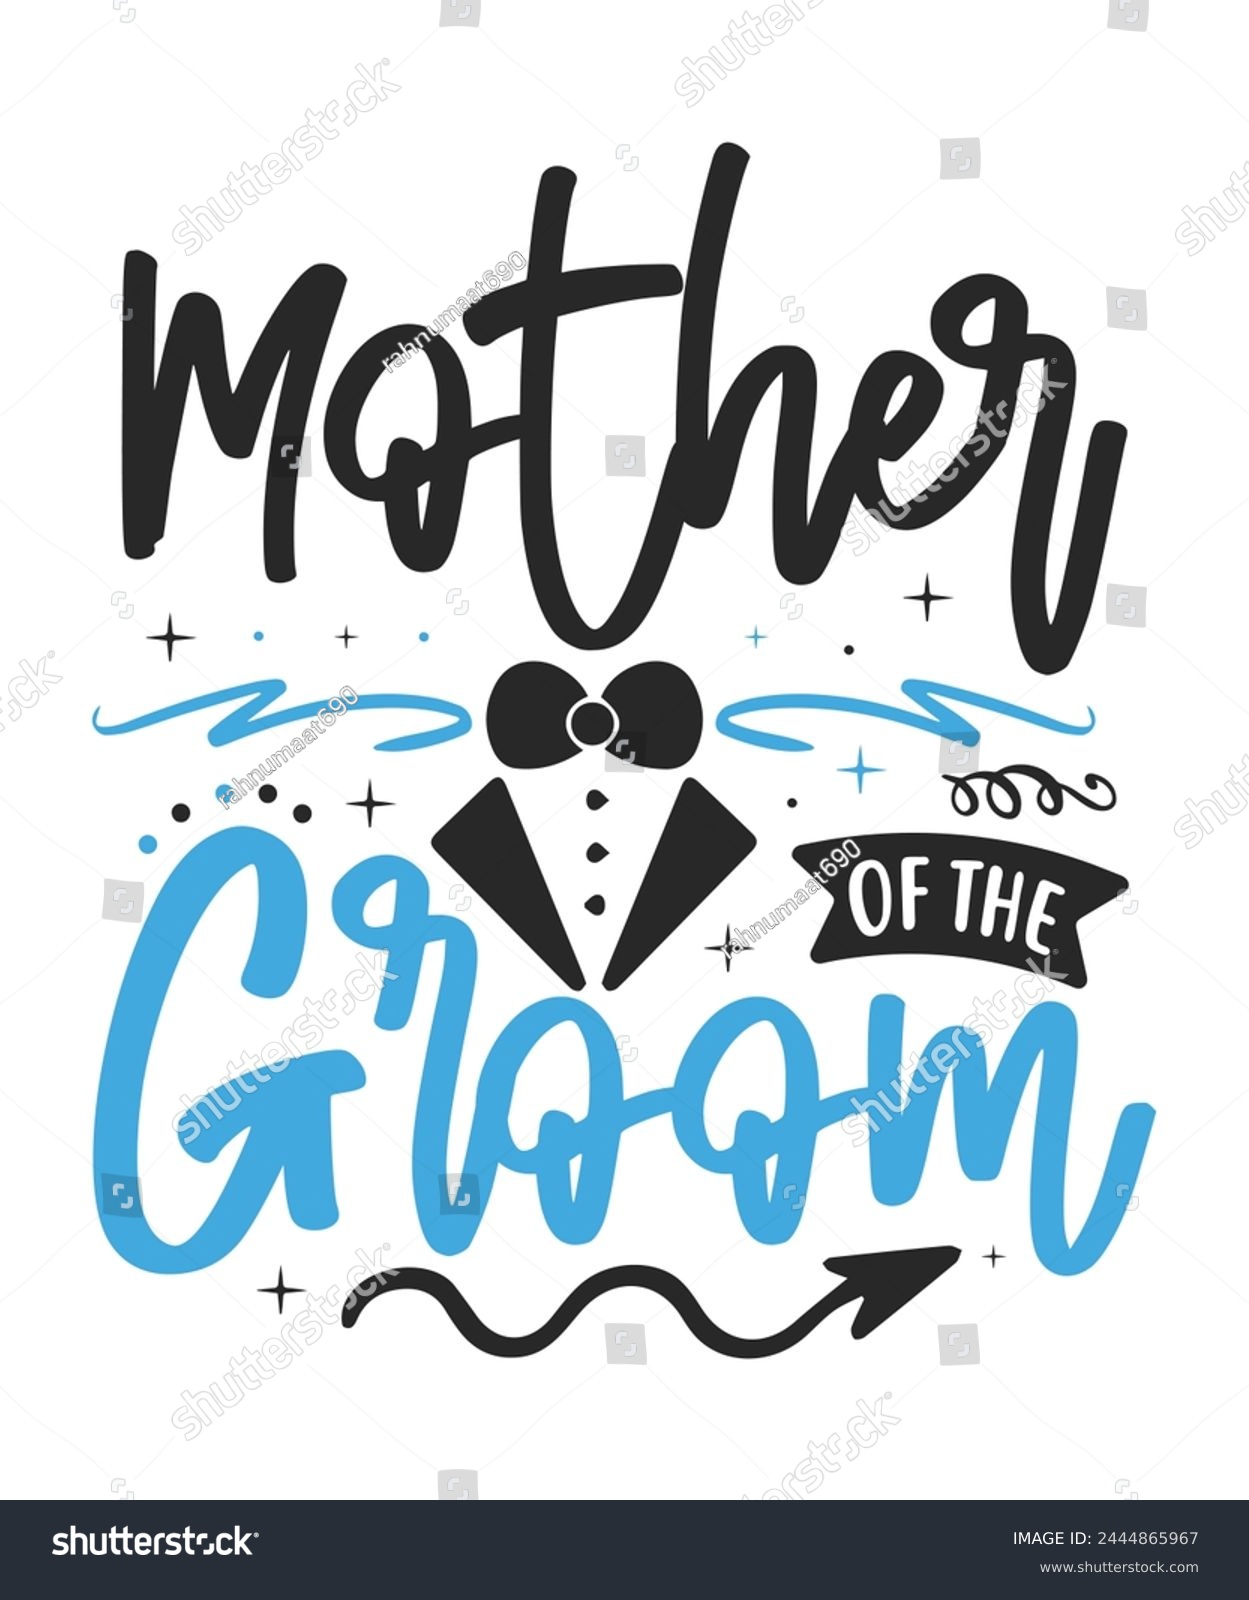 SVG of Mother of the groom wedding bride groom svg